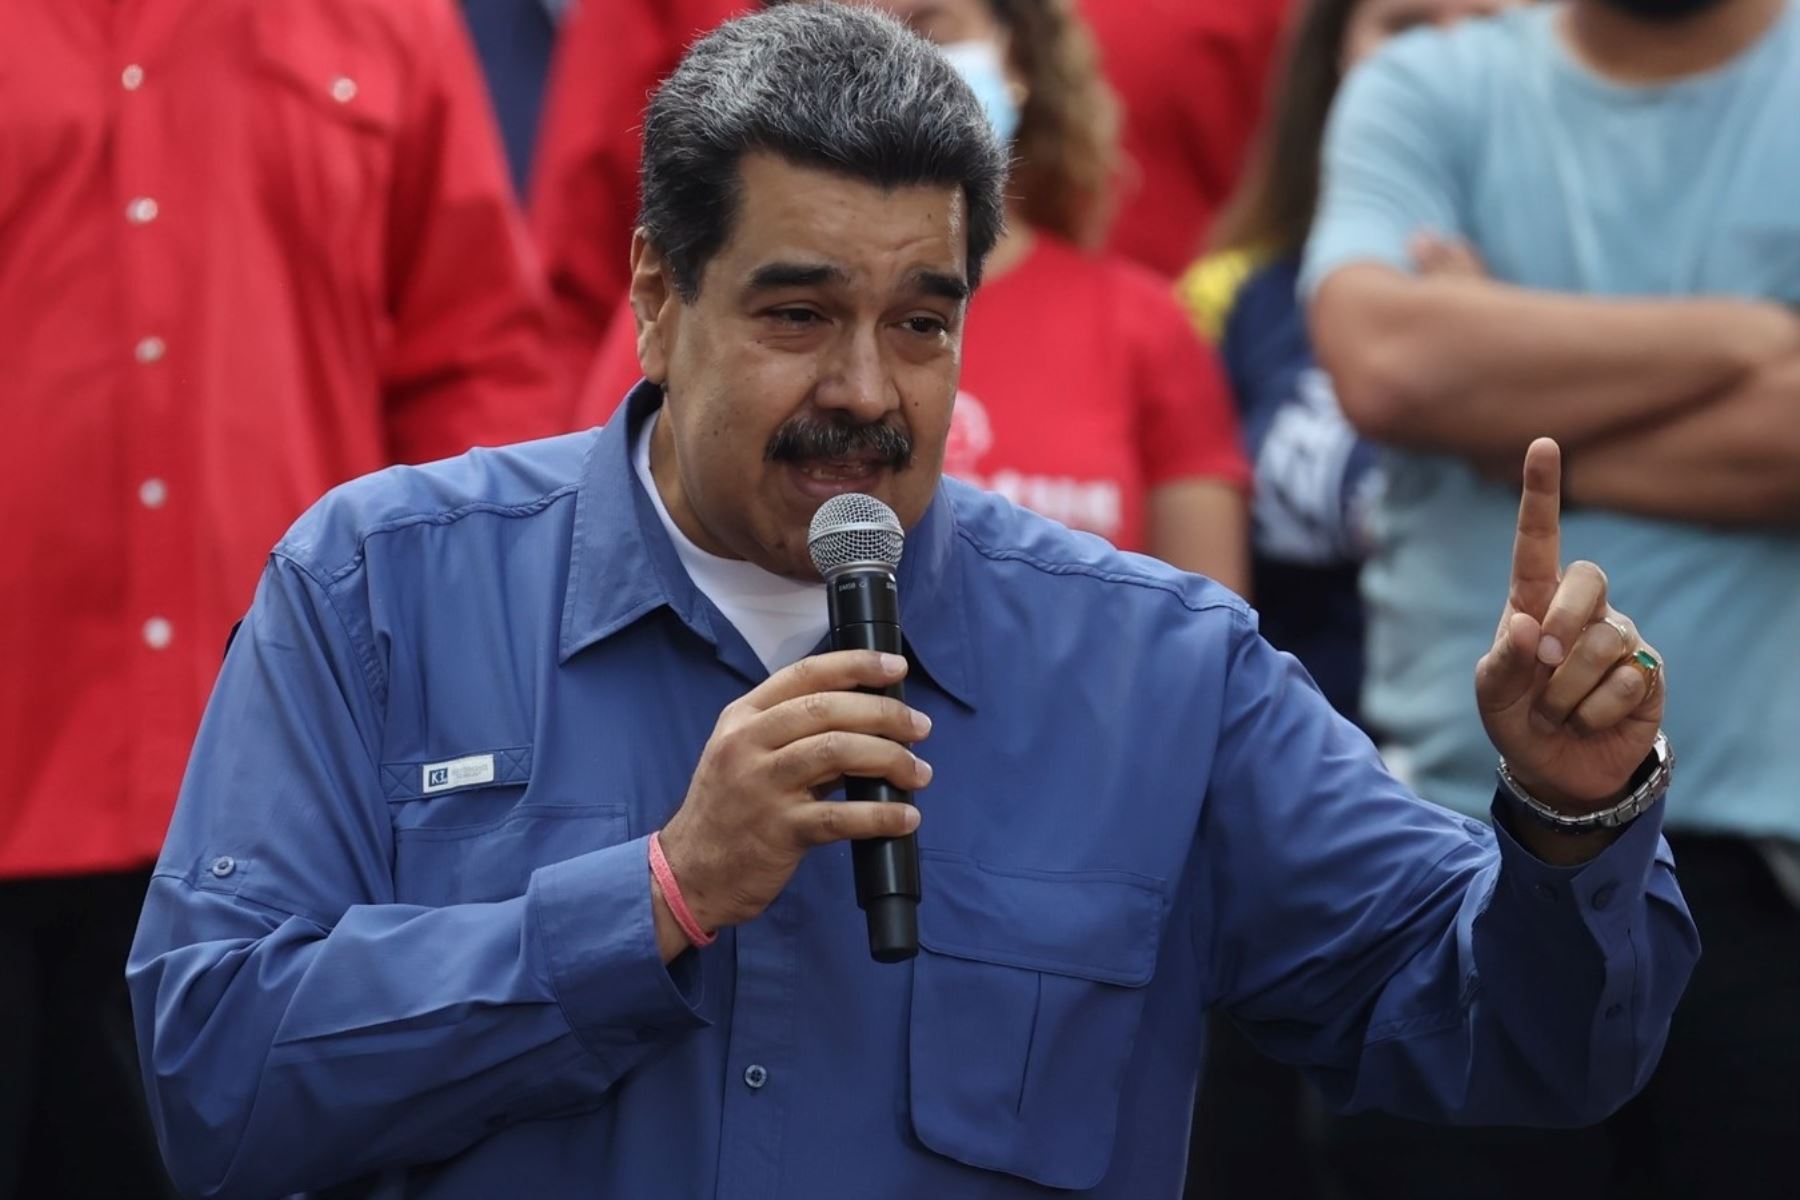 Temporalmente, EE.UU. suspende sanciones sobre la industria petrolera y gasífera de Venezuela